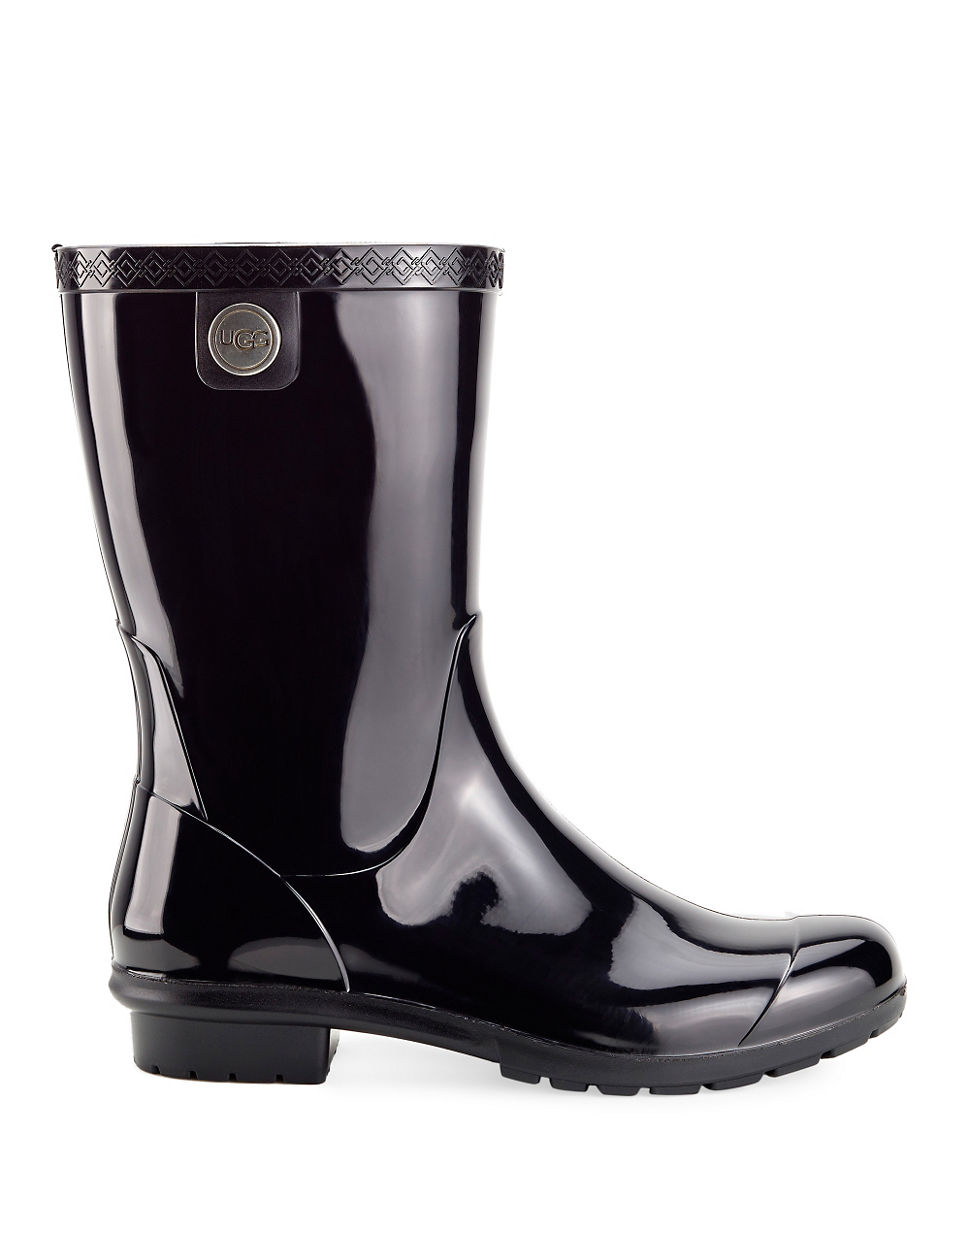 UGG Wendell Sienna Boots in Black - Lyst